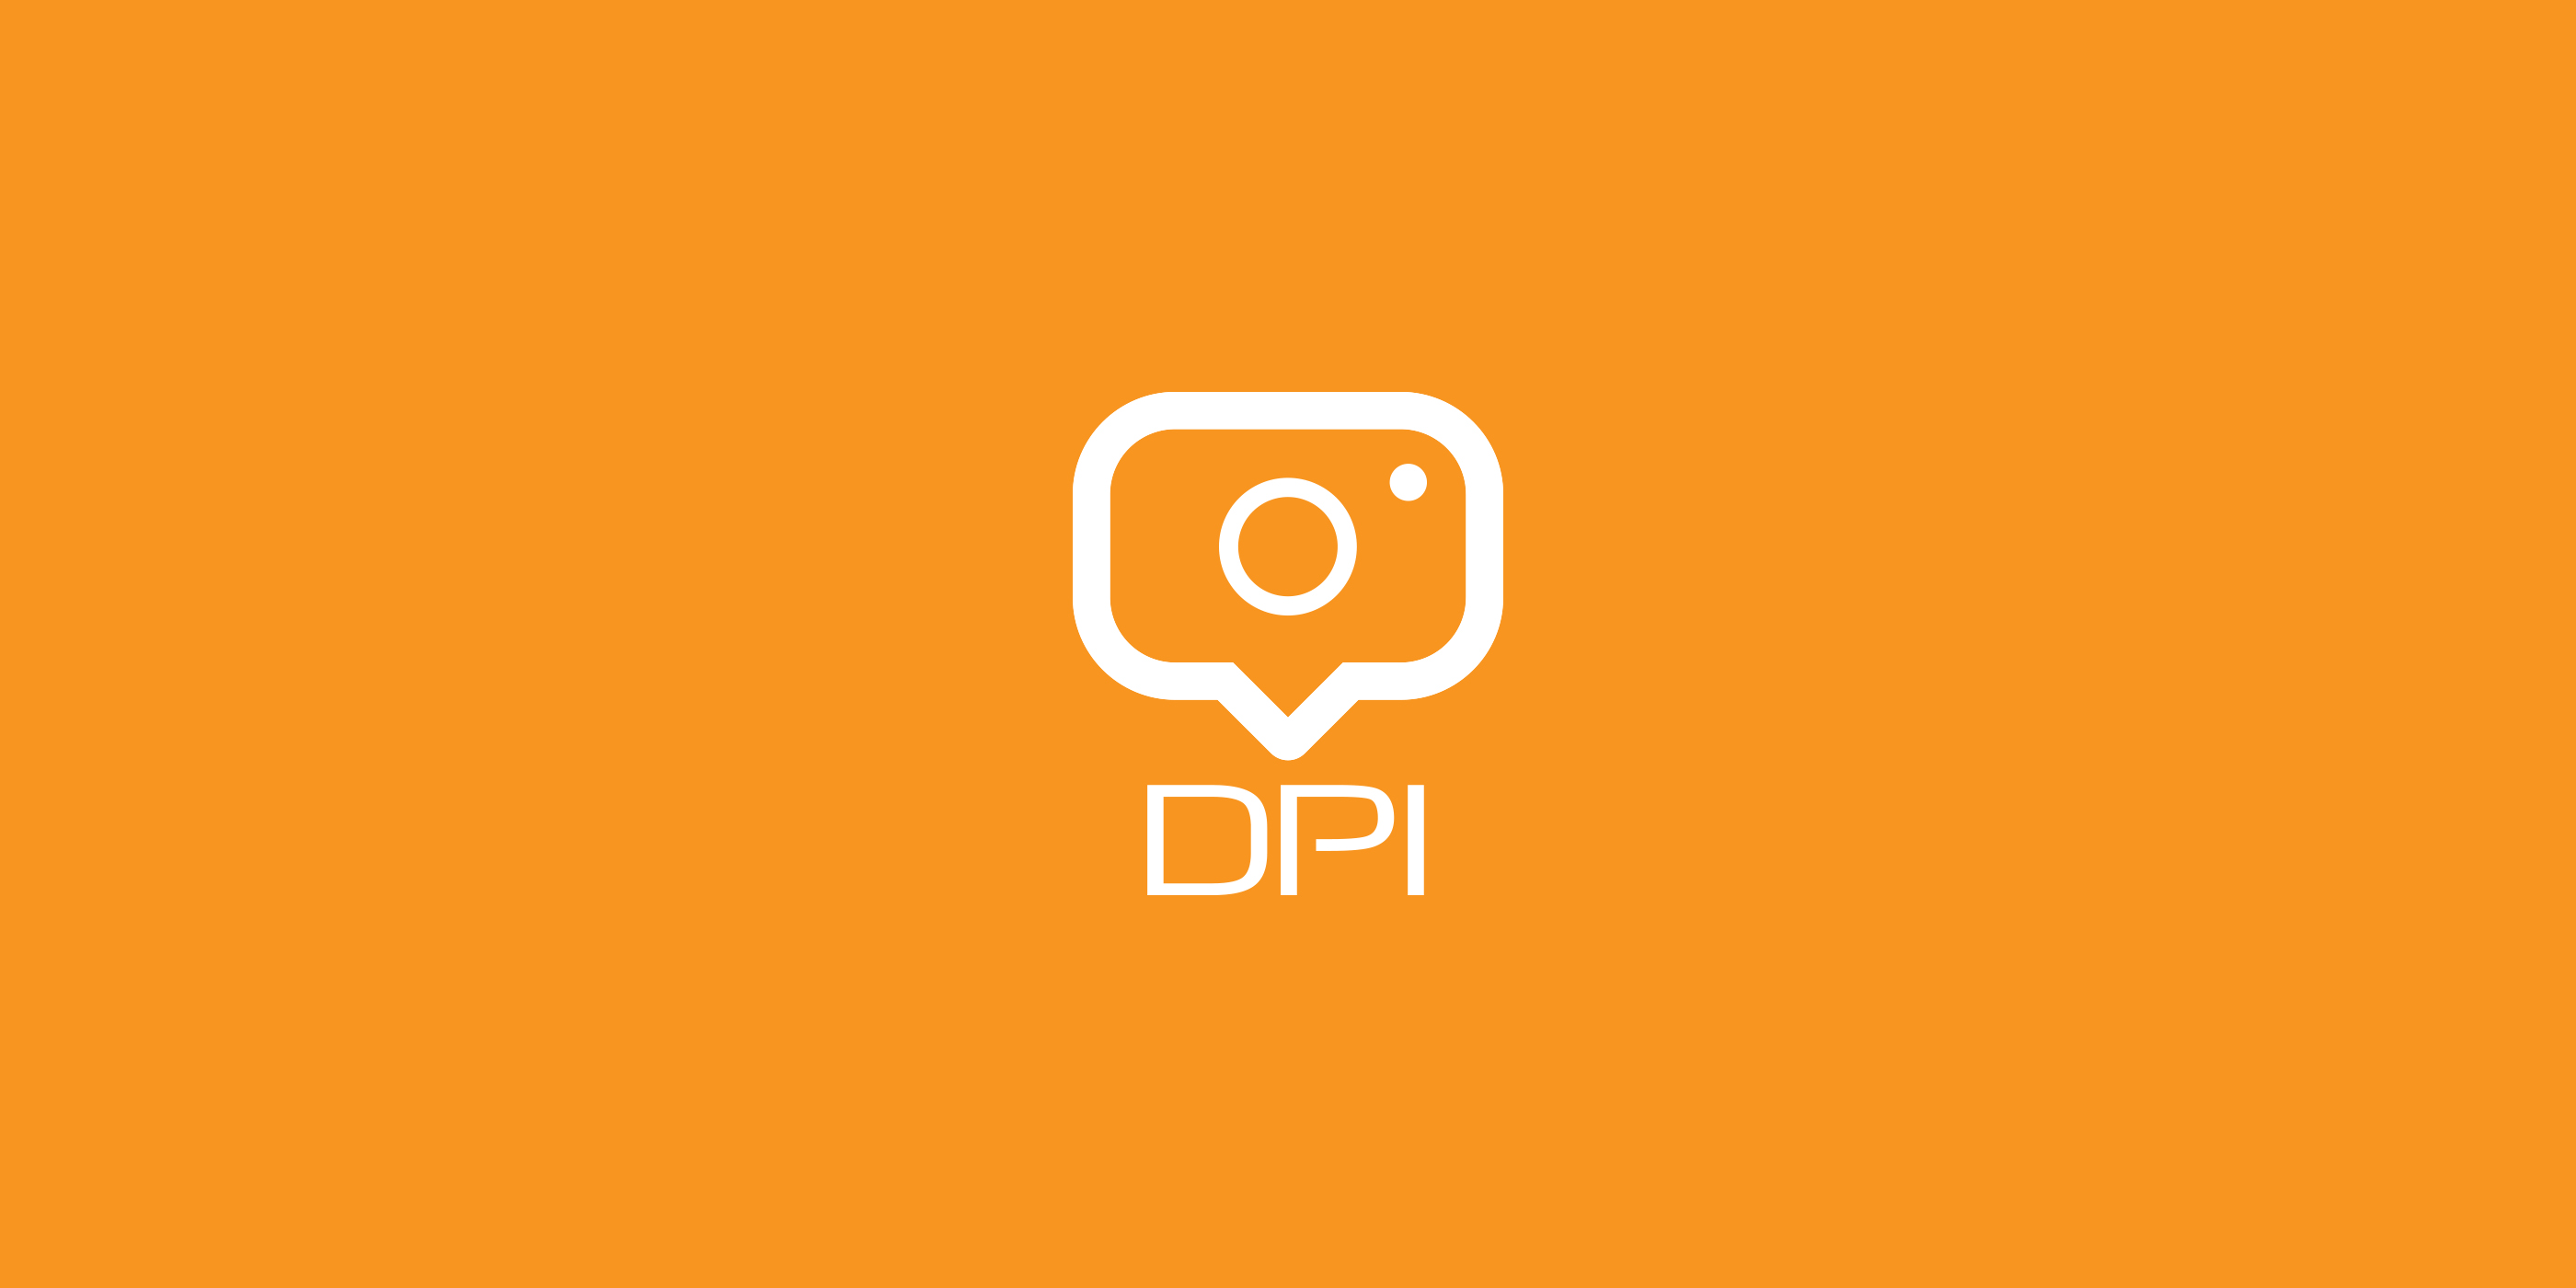 Vision DPI app design, development and logo design